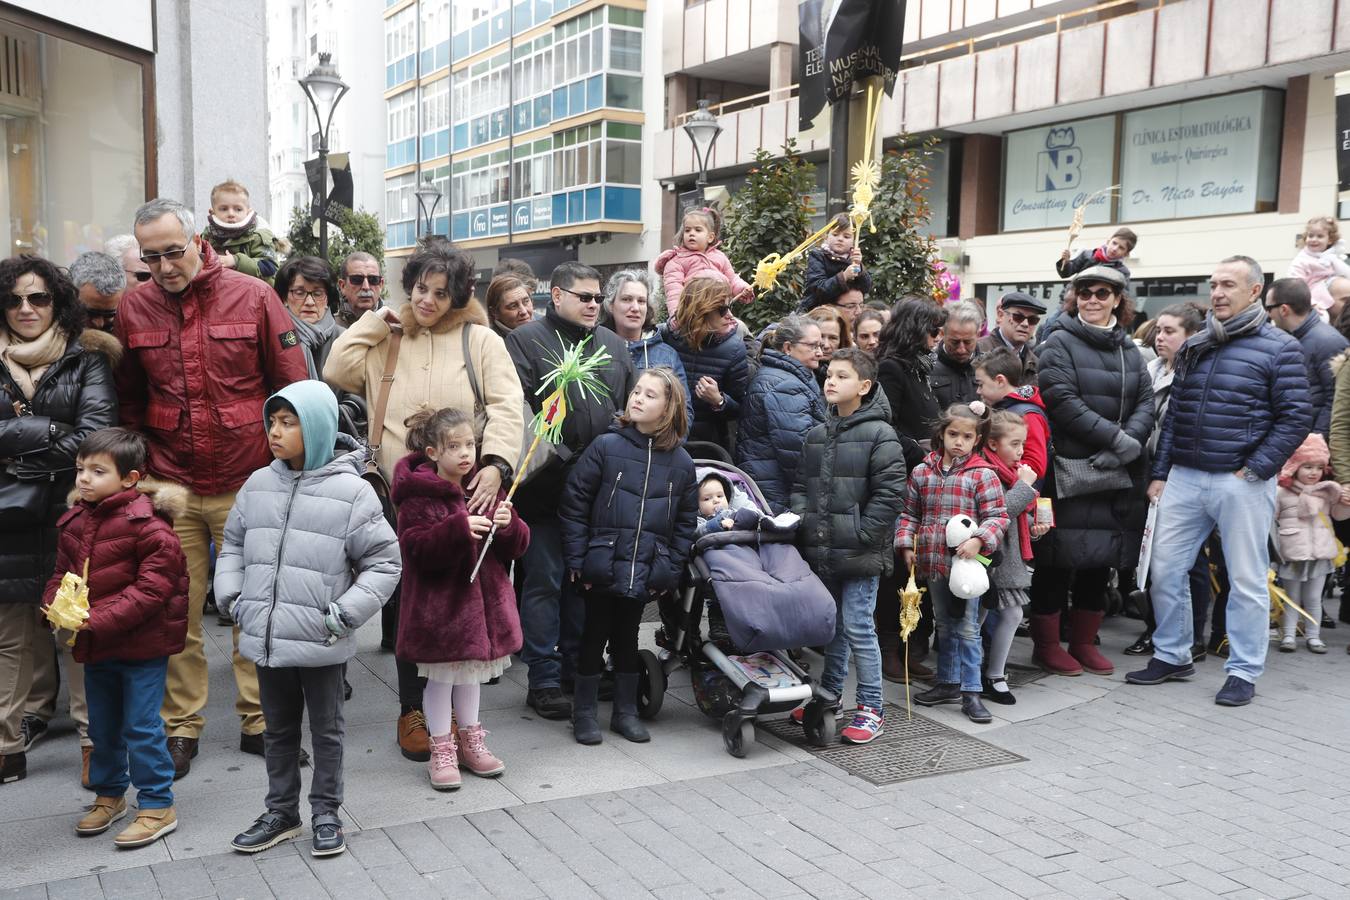 Fotos: Público en la Procesión del Domingo de Ramos en Valladolid (1/2)